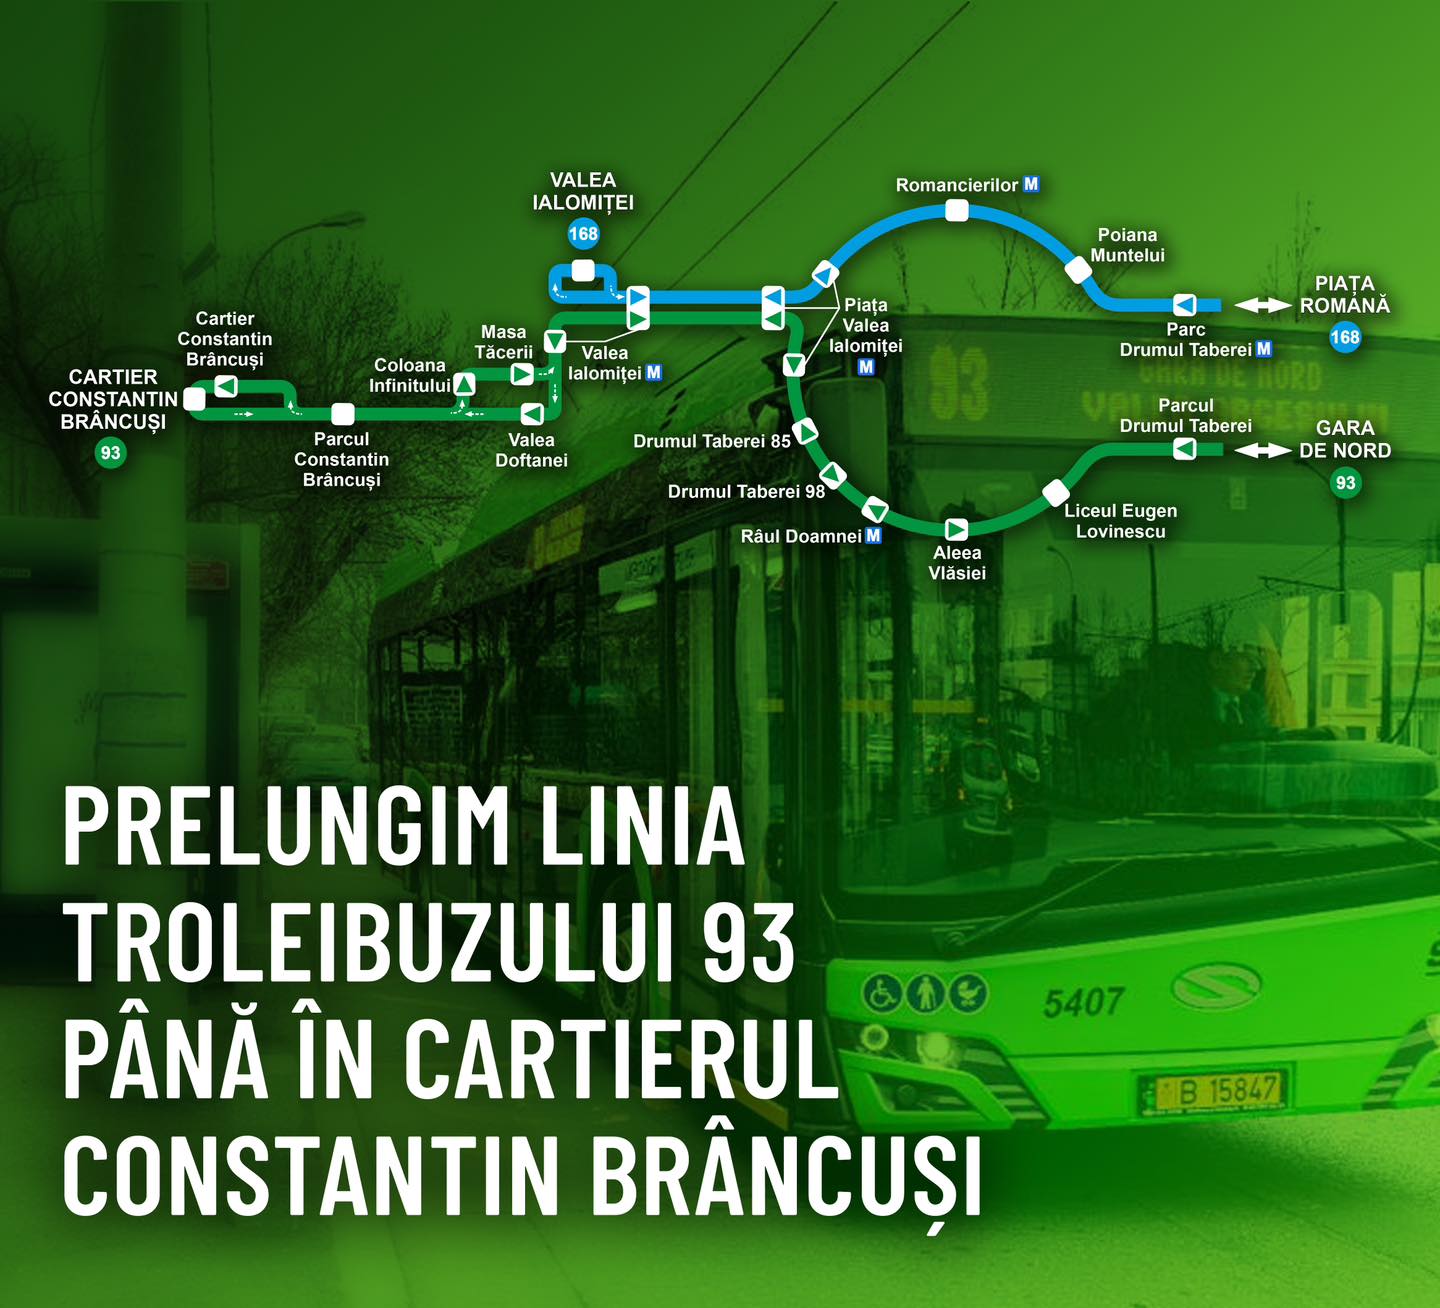 Nicușor Dan : Începând de duminică, 25 februarie, linia de troleibuze 93 va fi prelungită până în cartierul Constantin Brâncuși iar pe acest traseu vor circula numai troleibuze noi Solaris, nepoluante.